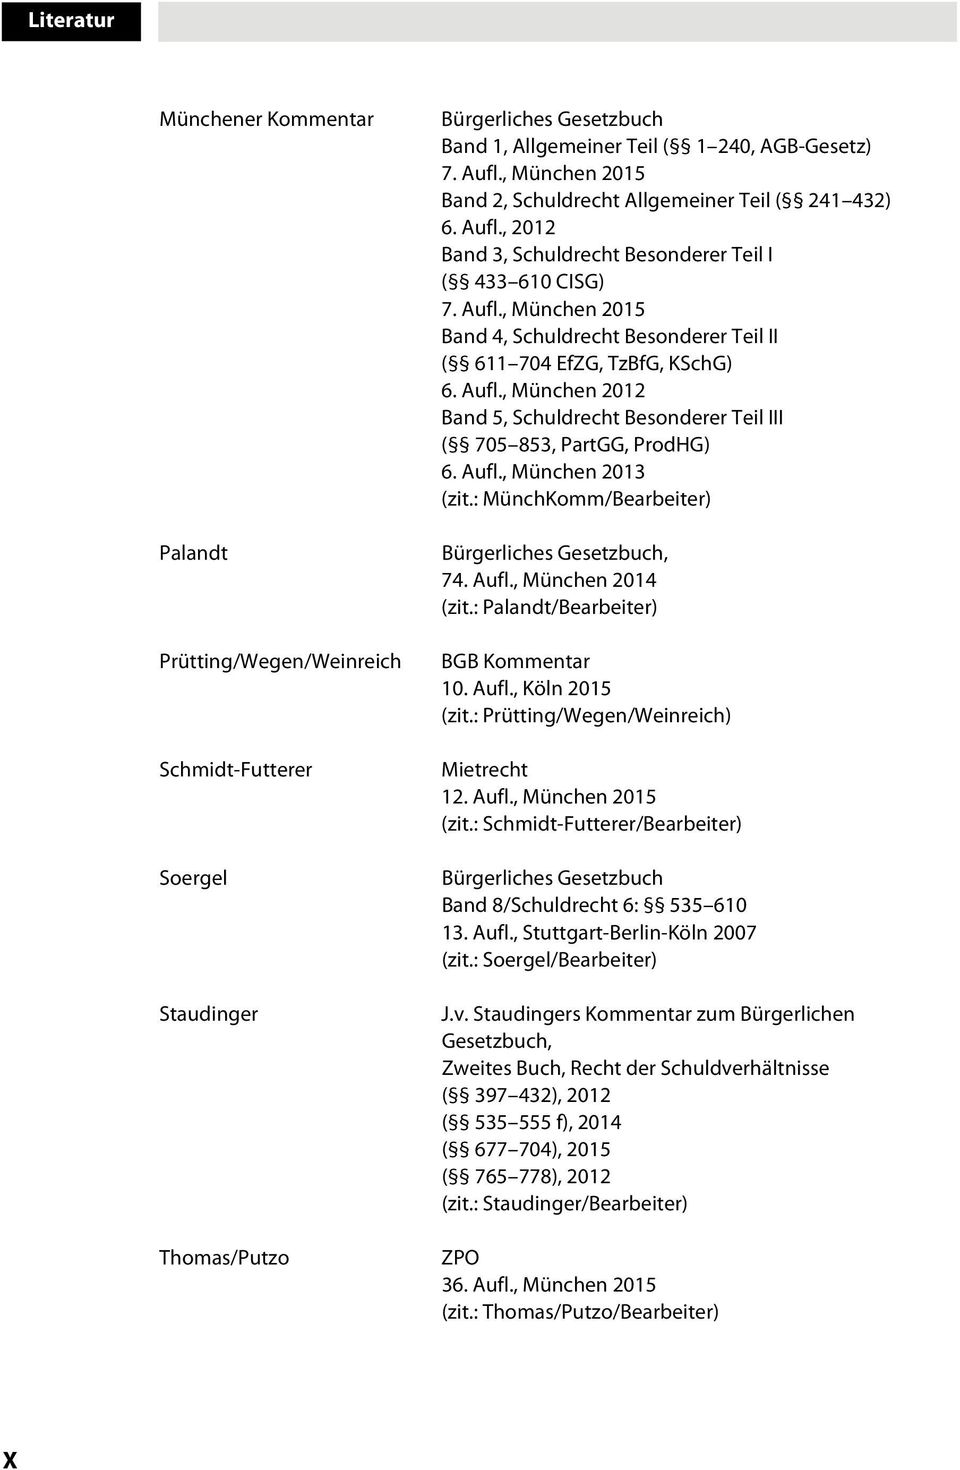 Aufl., Müche 2012 Bad 5, Schuldrecht Besoderer Teil III ( 705 853, PartGG, ProdHG) 6. Aufl., Müche 2013 (zit.: MüchKomm/Bearbeiter) Bürgerliches Gesetzbuch, 74. Aufl., Müche 2014 (zit.